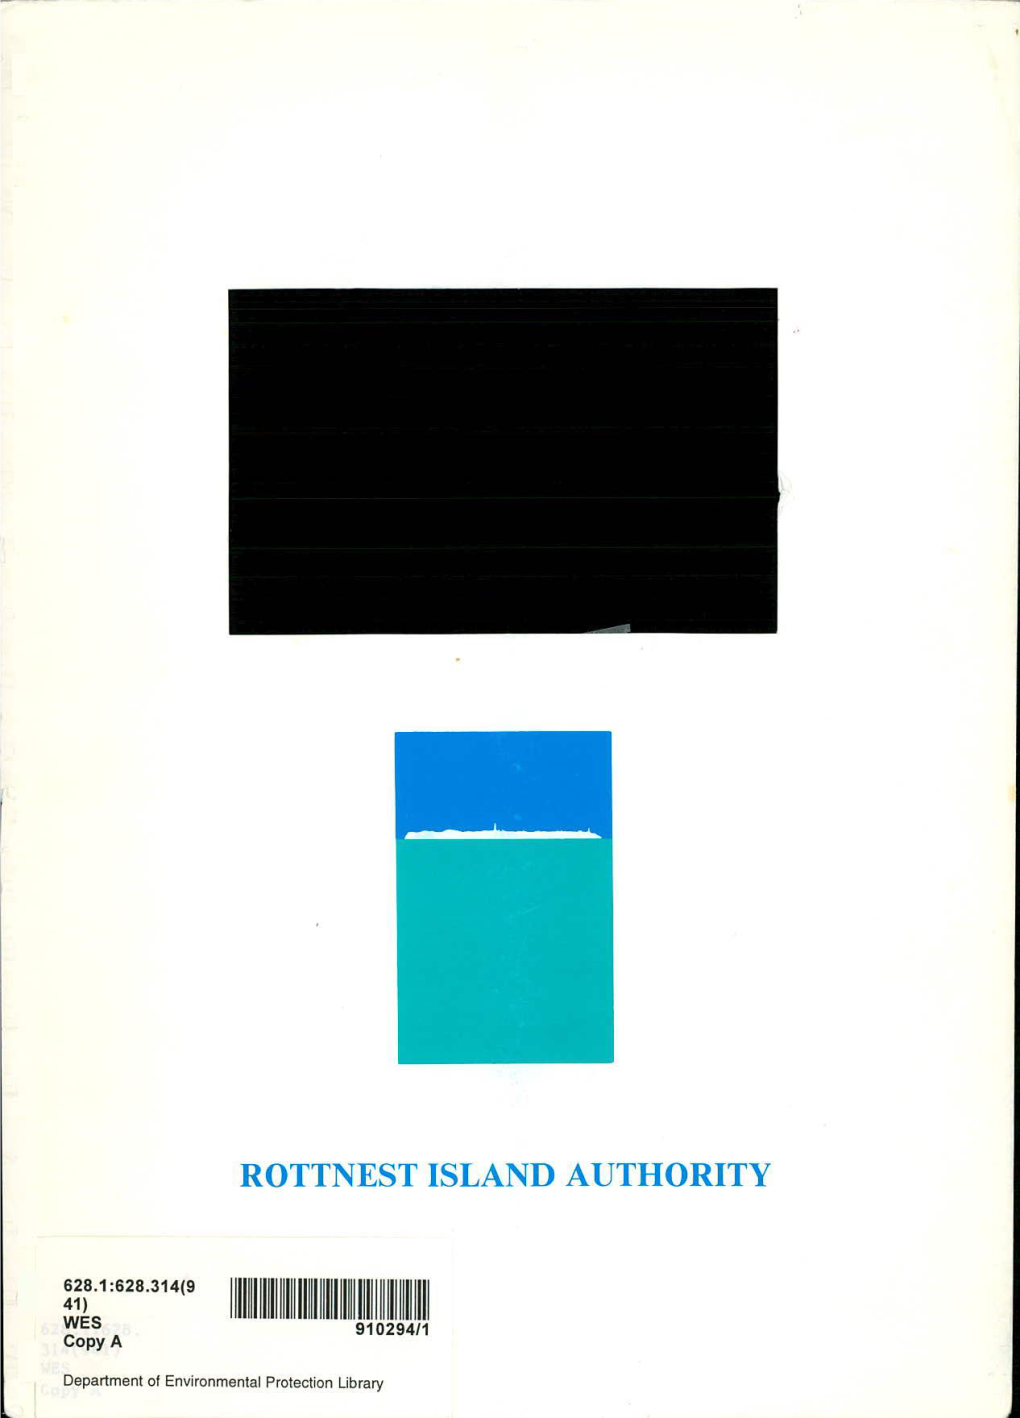 ROTTNEST Island AUTHORITY